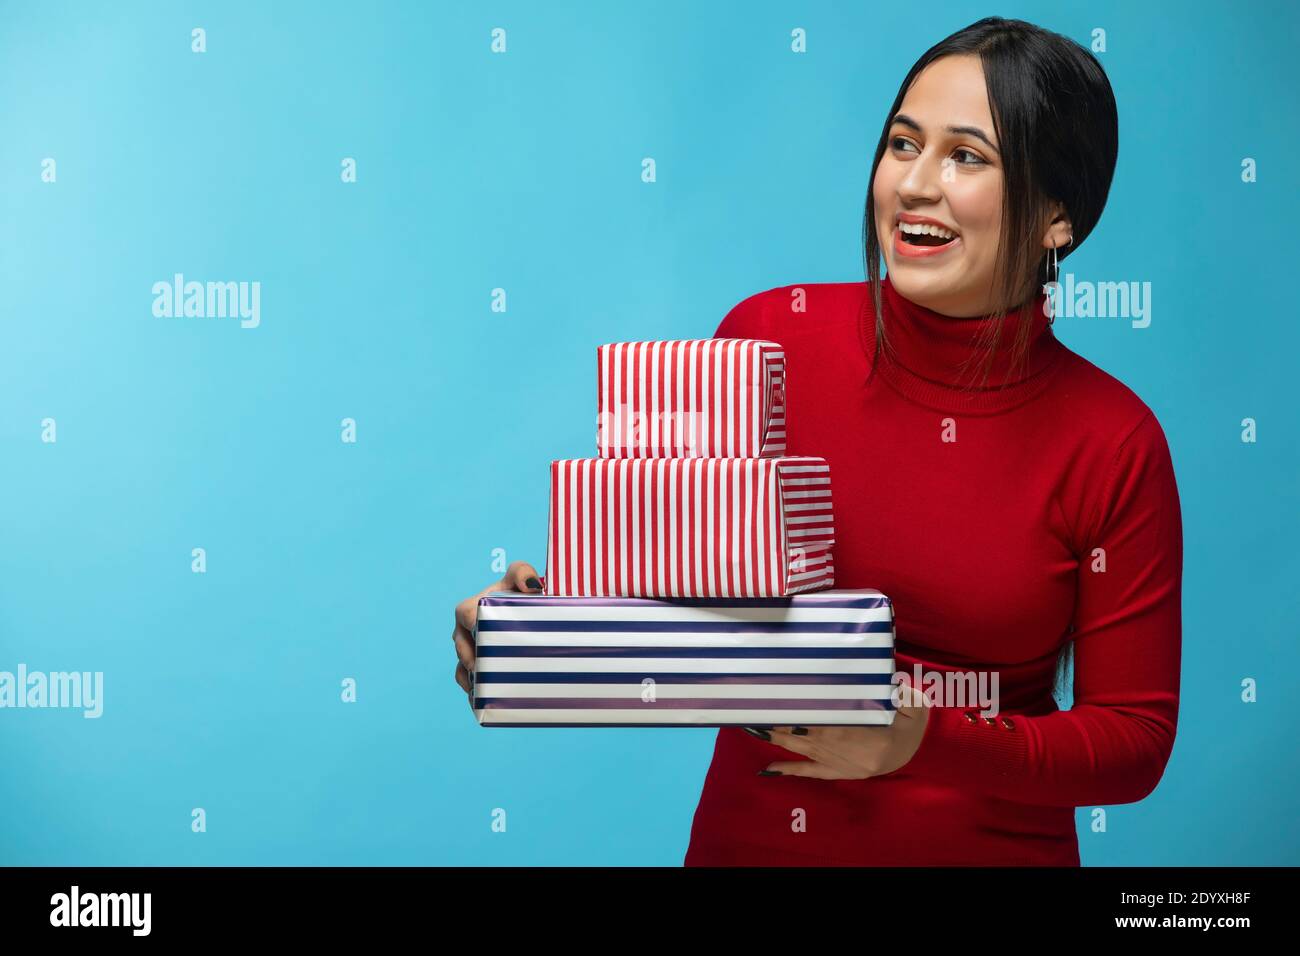 Ritratto di giovane donna che indossa una felpa rossa e porta un regalo scatola in mano Foto Stock